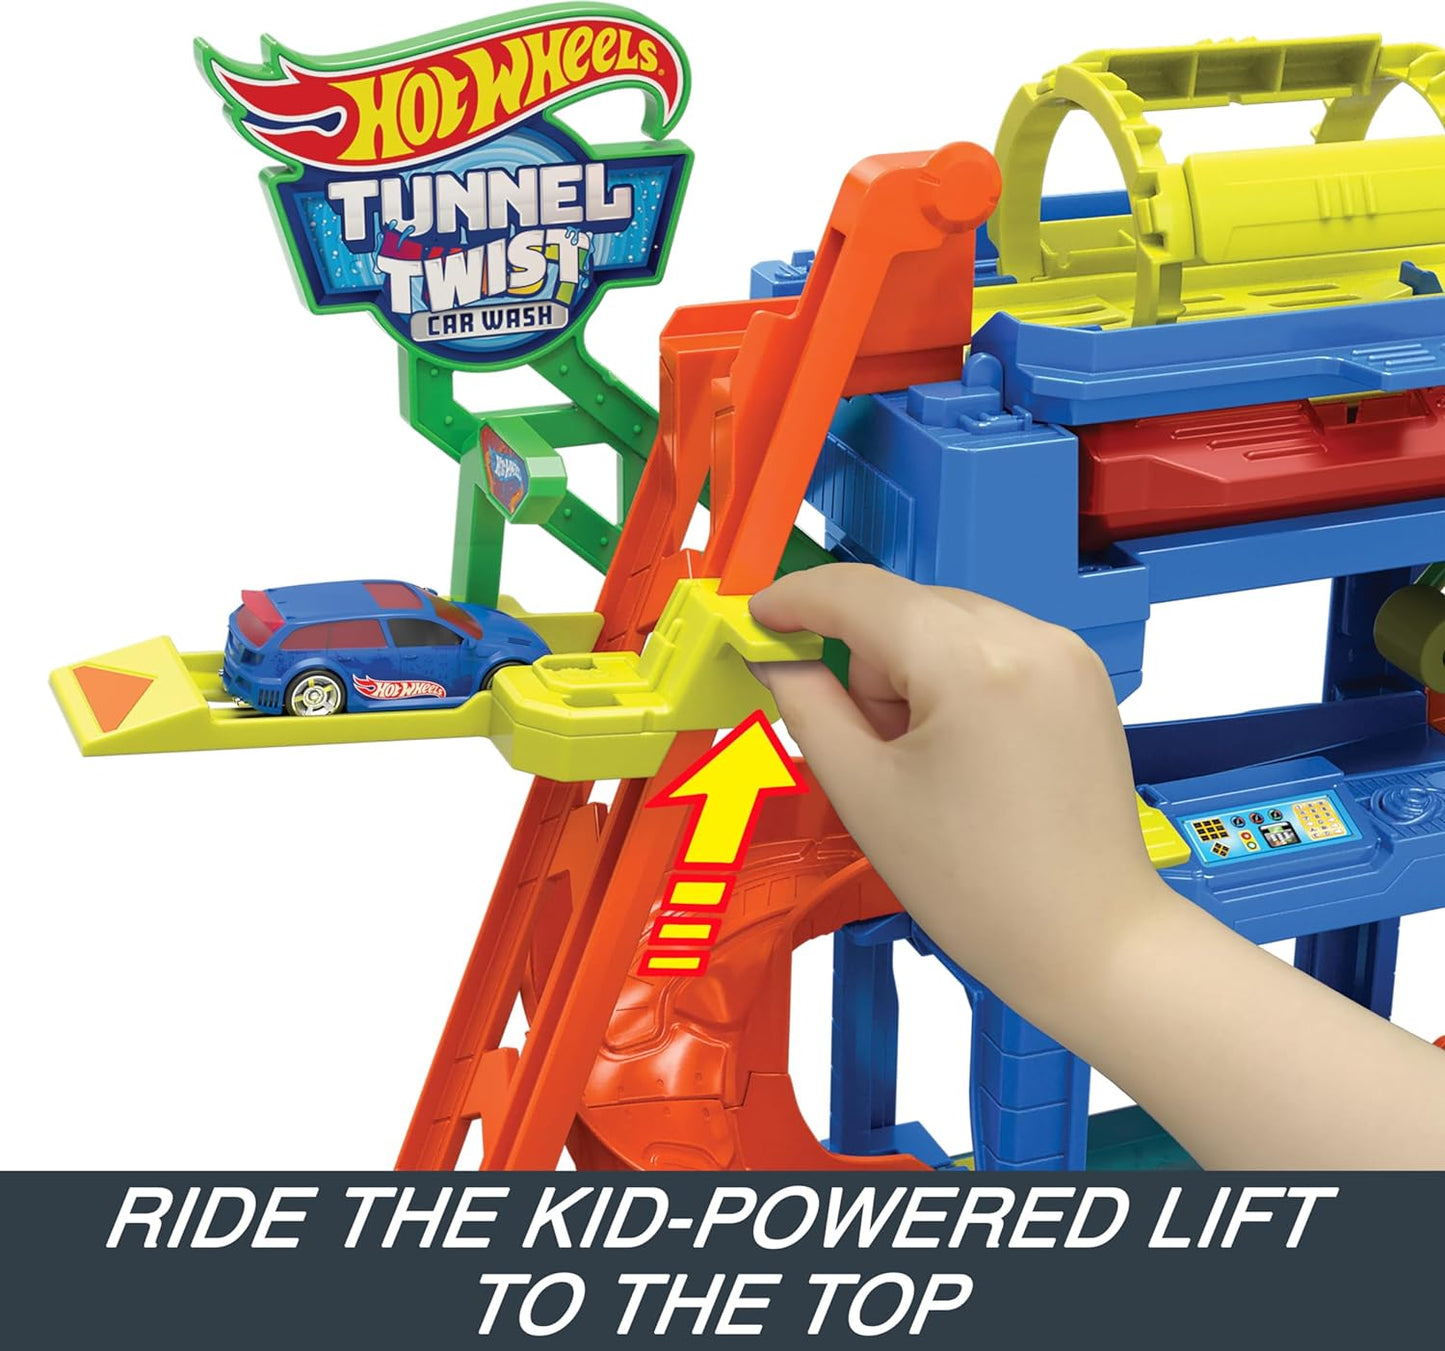 Hot Wheels Let's Race Netflix - Conjunto de pista de carro de brinquedo urbano, lavagem de carro Tunnel Twist com 1 veículo Color Shifters em escala 1:64, HTN80